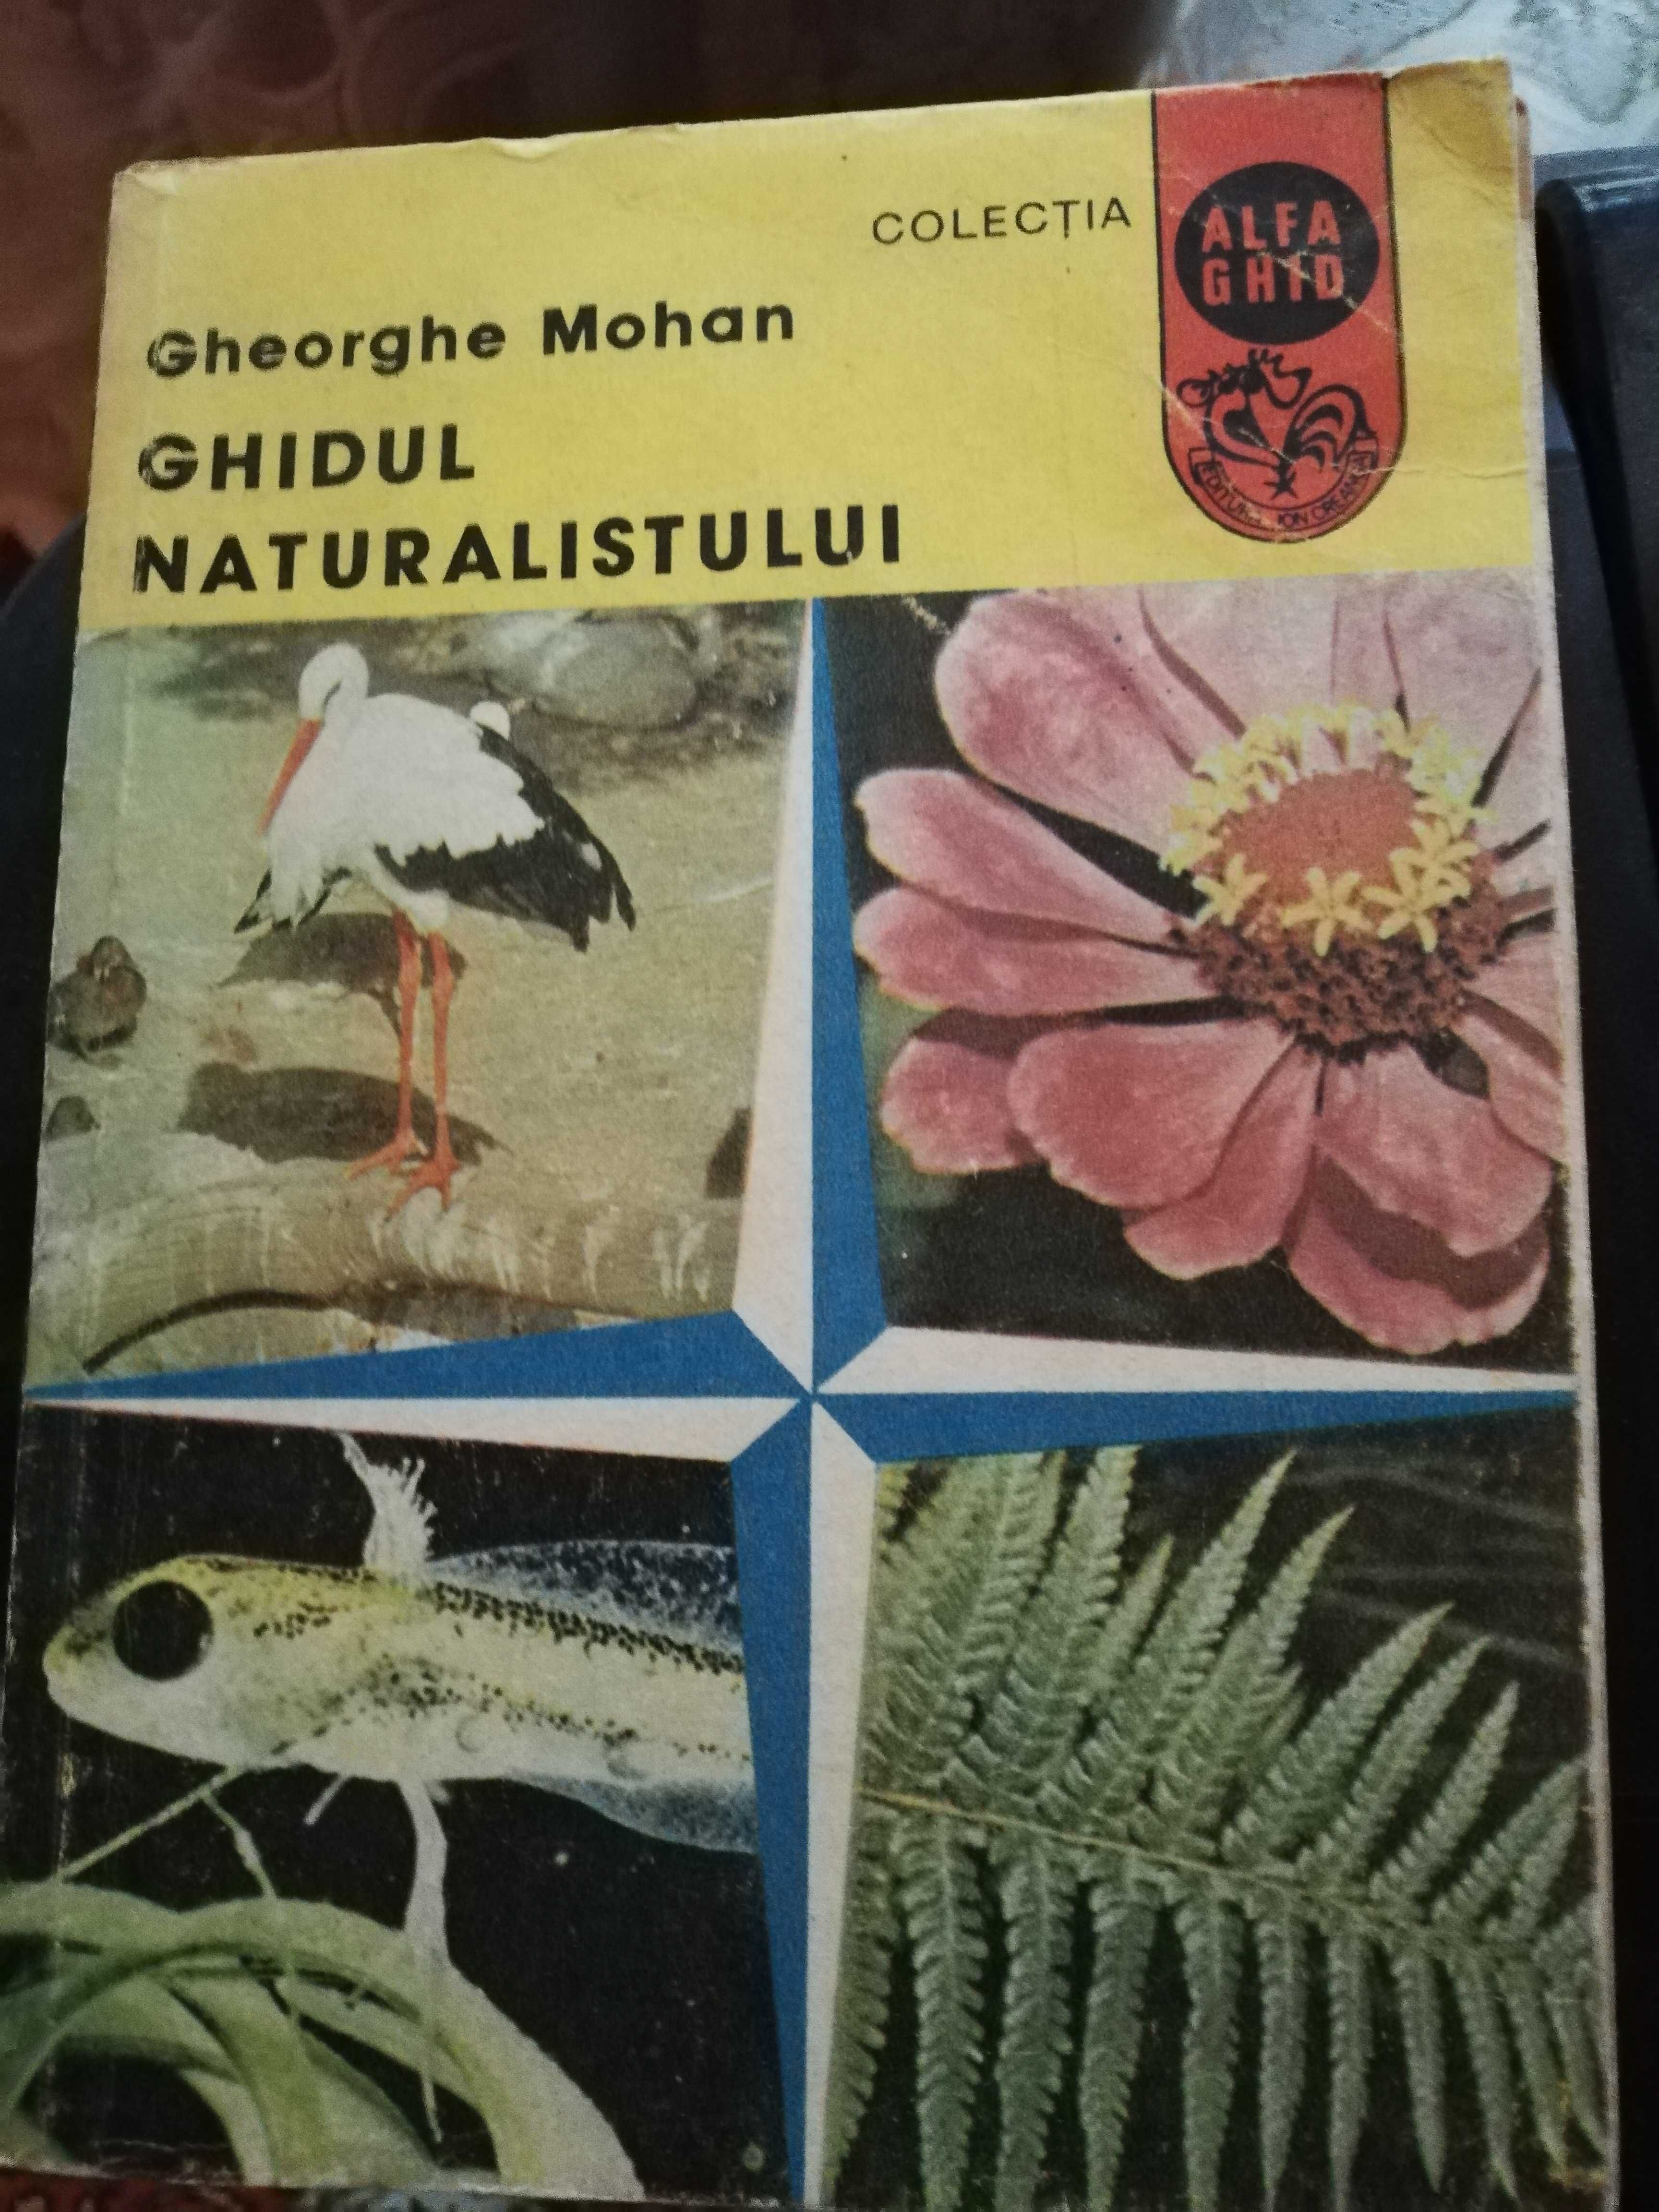 Ghidul naturalistului - Gh. Mohan